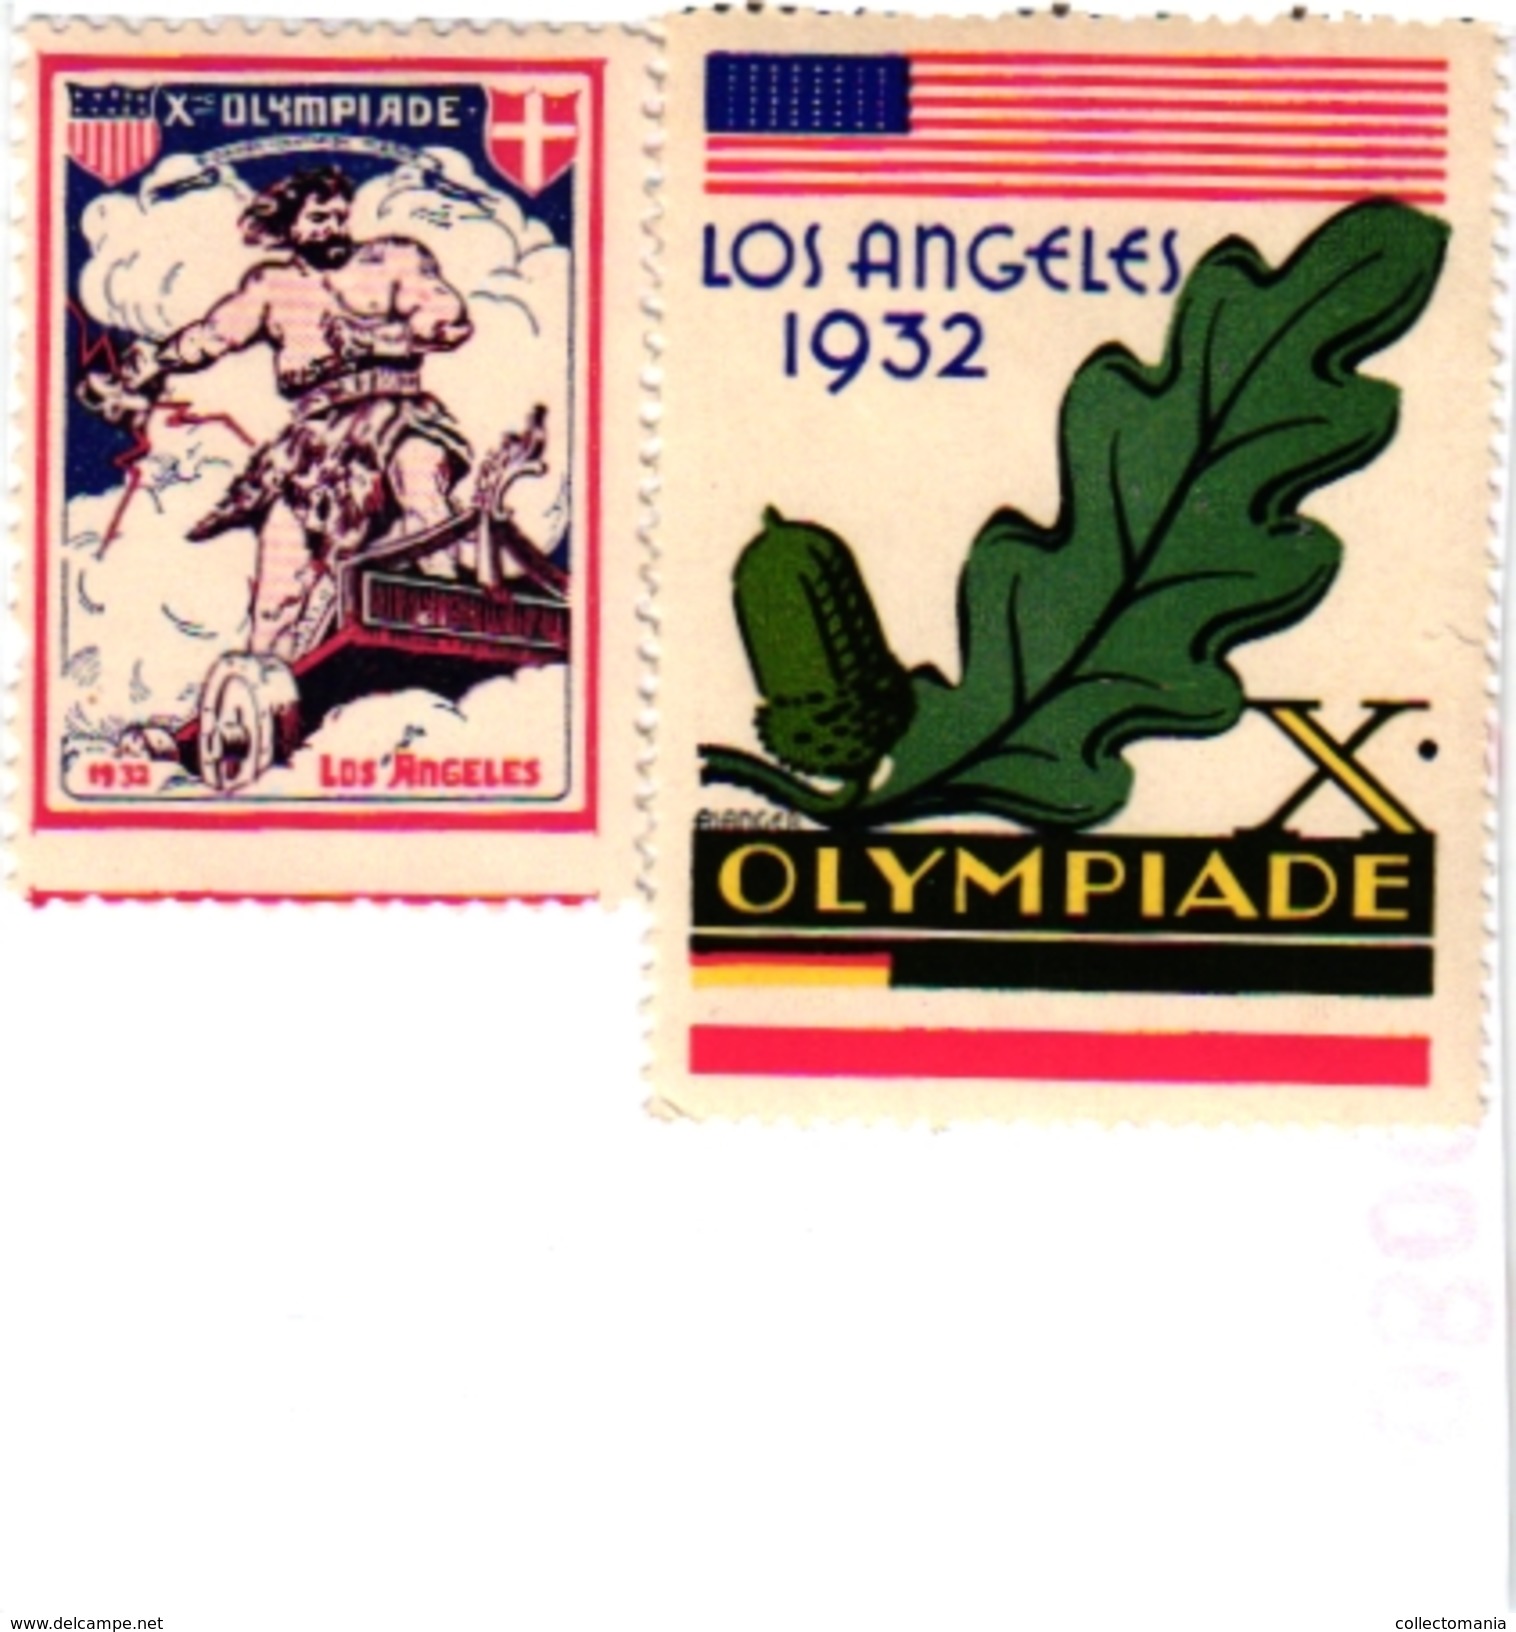 2 POSTER STAMPS Cinderella Olympiade LOS ANGELES 1932 - Verano 1932: Los Angeles